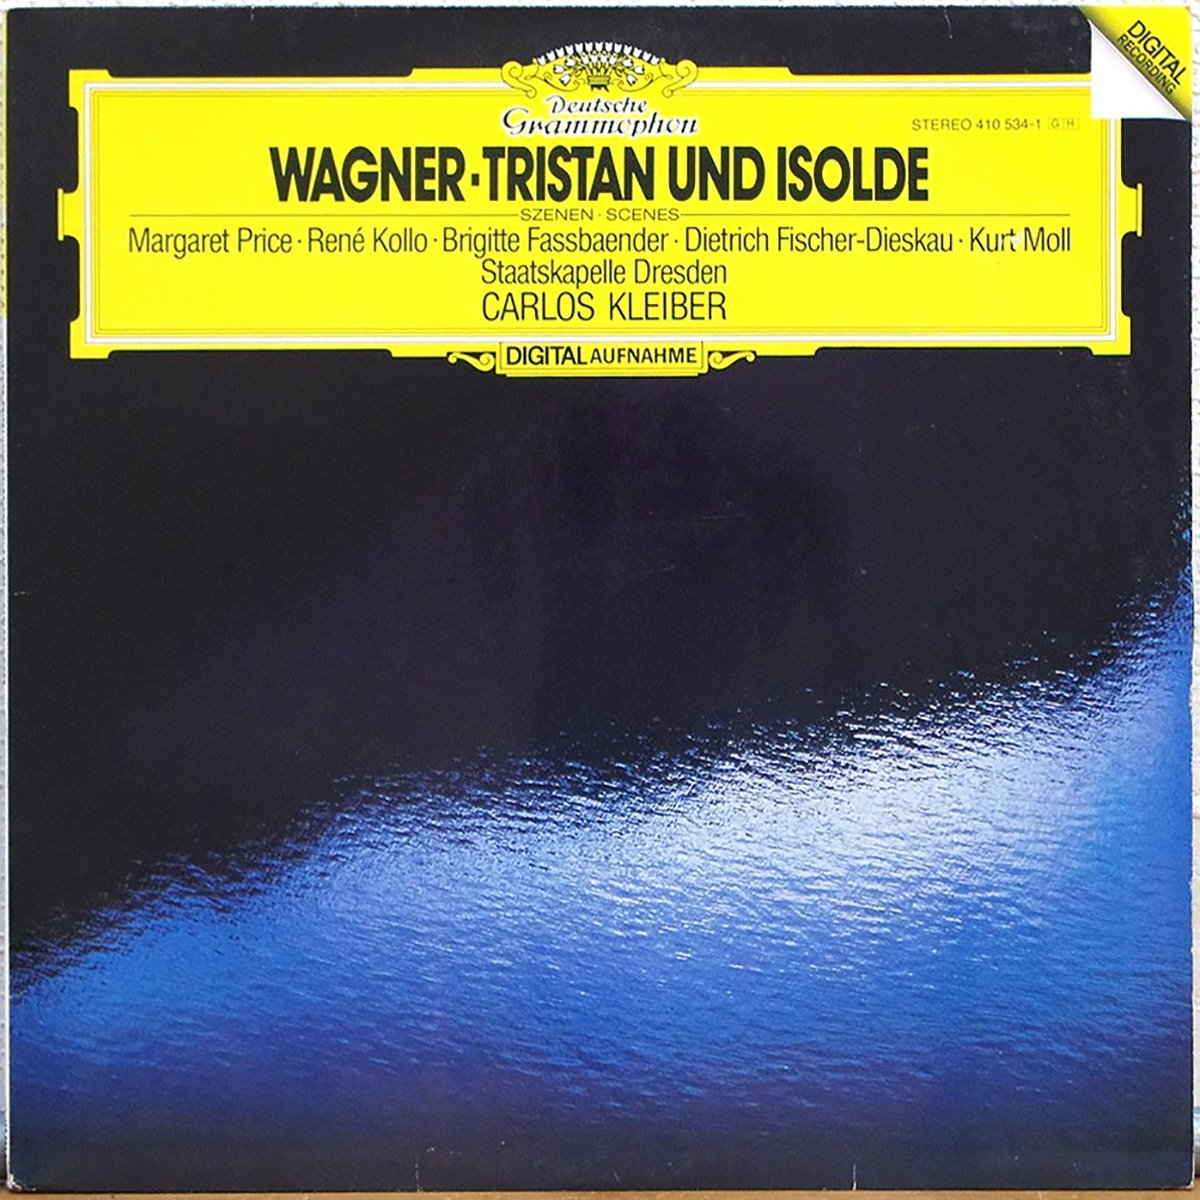 DGG 410 534 Wagner Tristan Und Isolde Kleiber DGG Digital Aufnahme